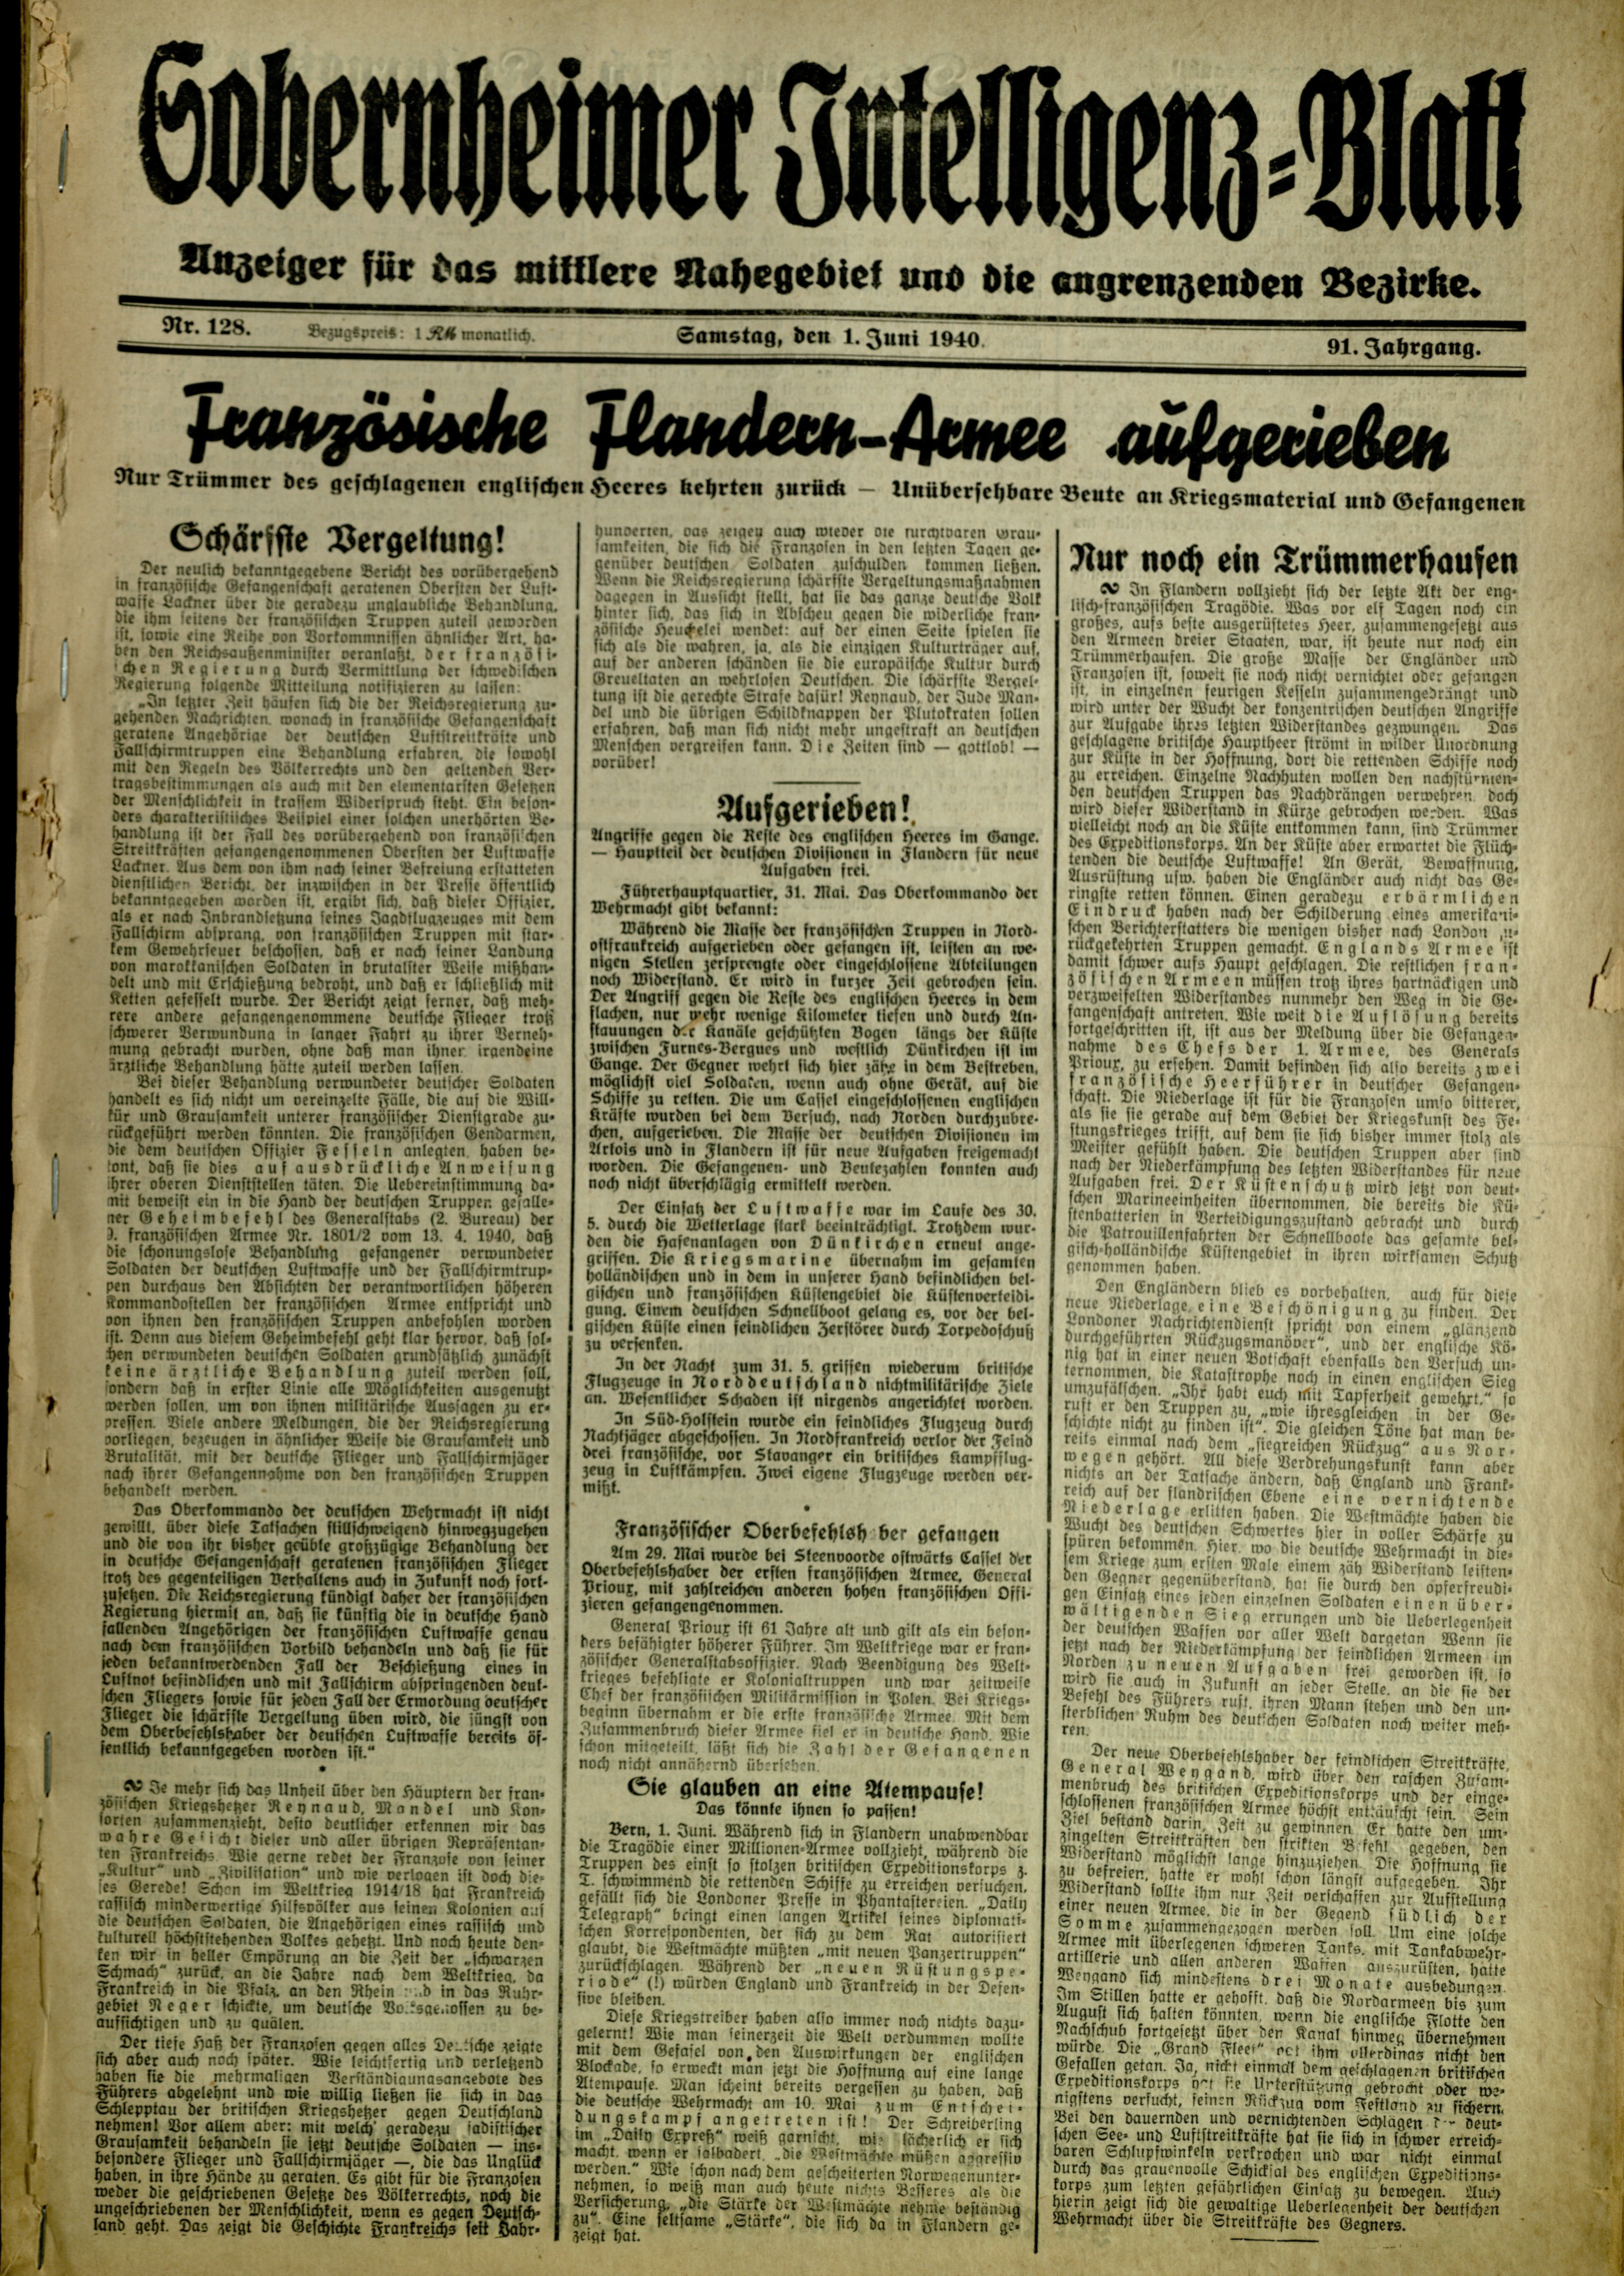 Zeitung: Sobernheimer Intelligenzblatt; Juni 1940, Jg. 91 Nr. 128 (Heimatmuseum Bad Sobernheim CC BY-NC-SA)